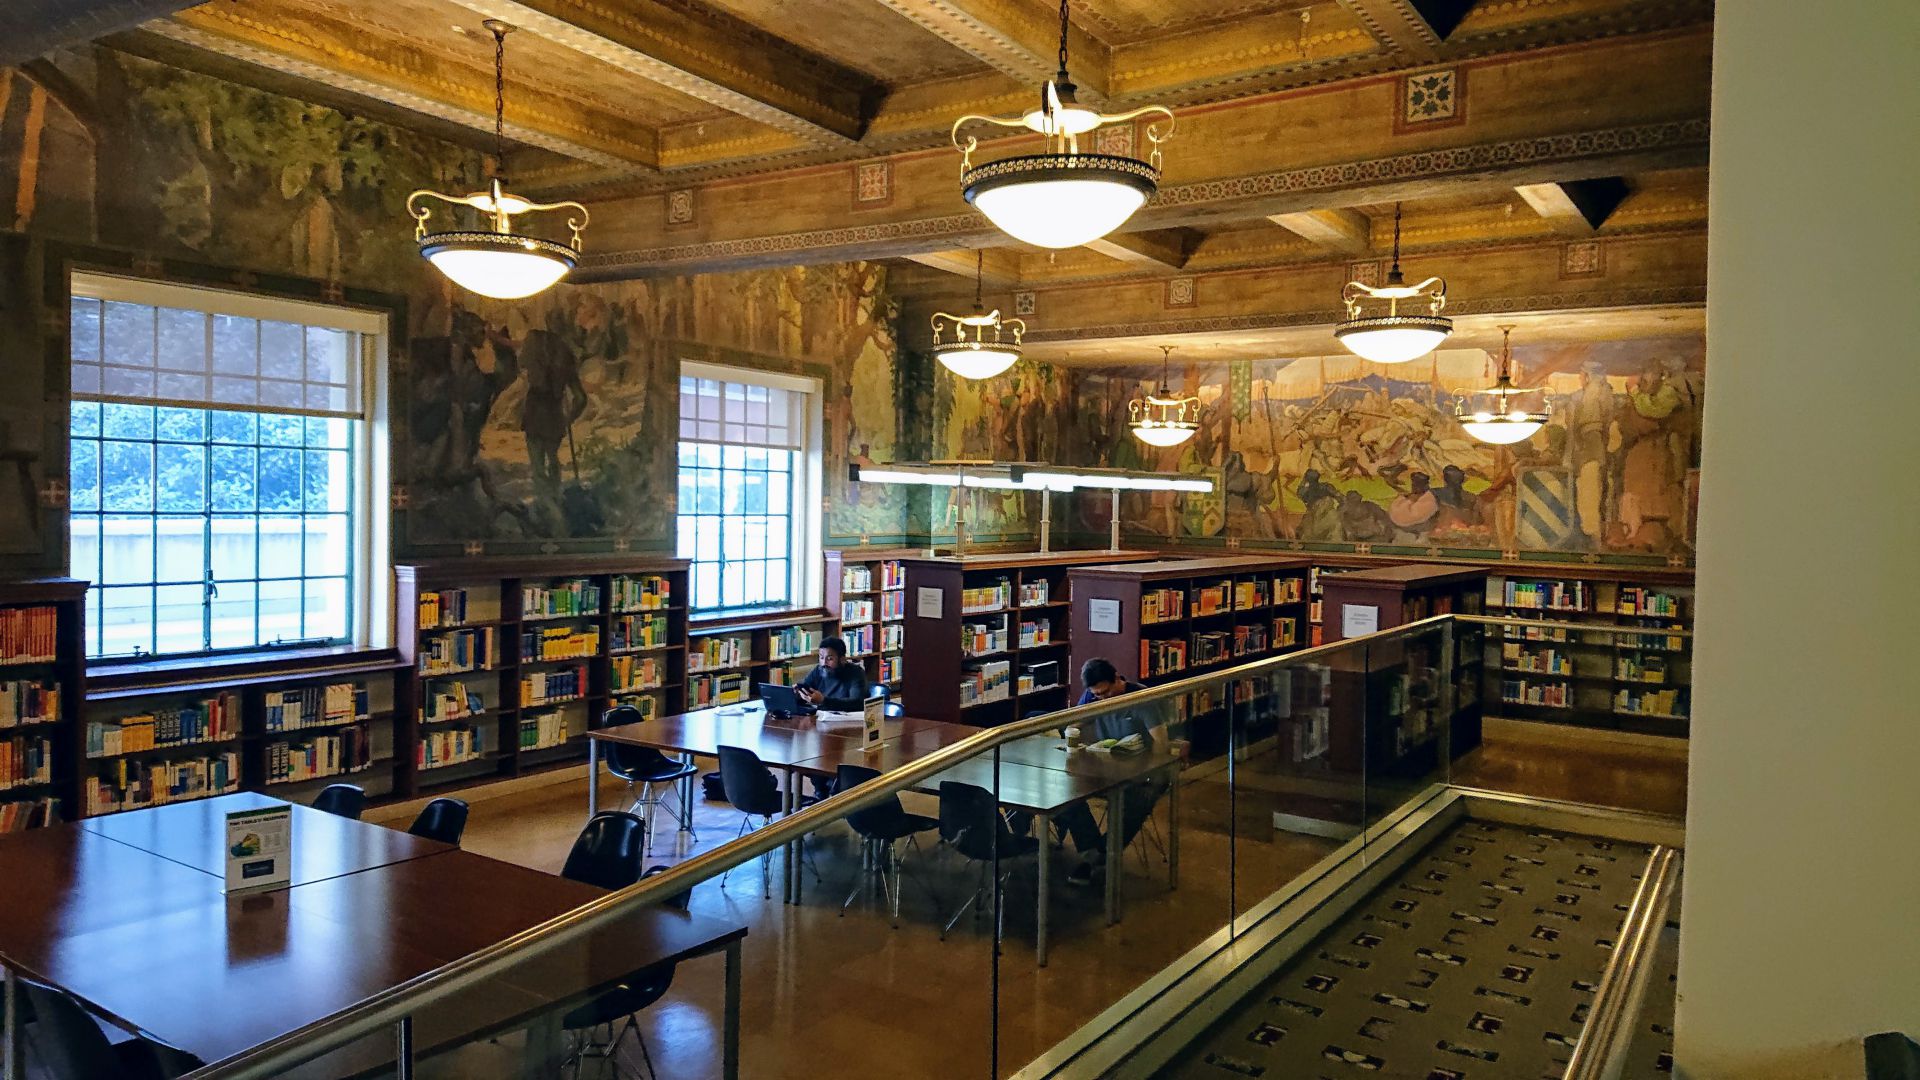 Los Angeles, CA - Public Library